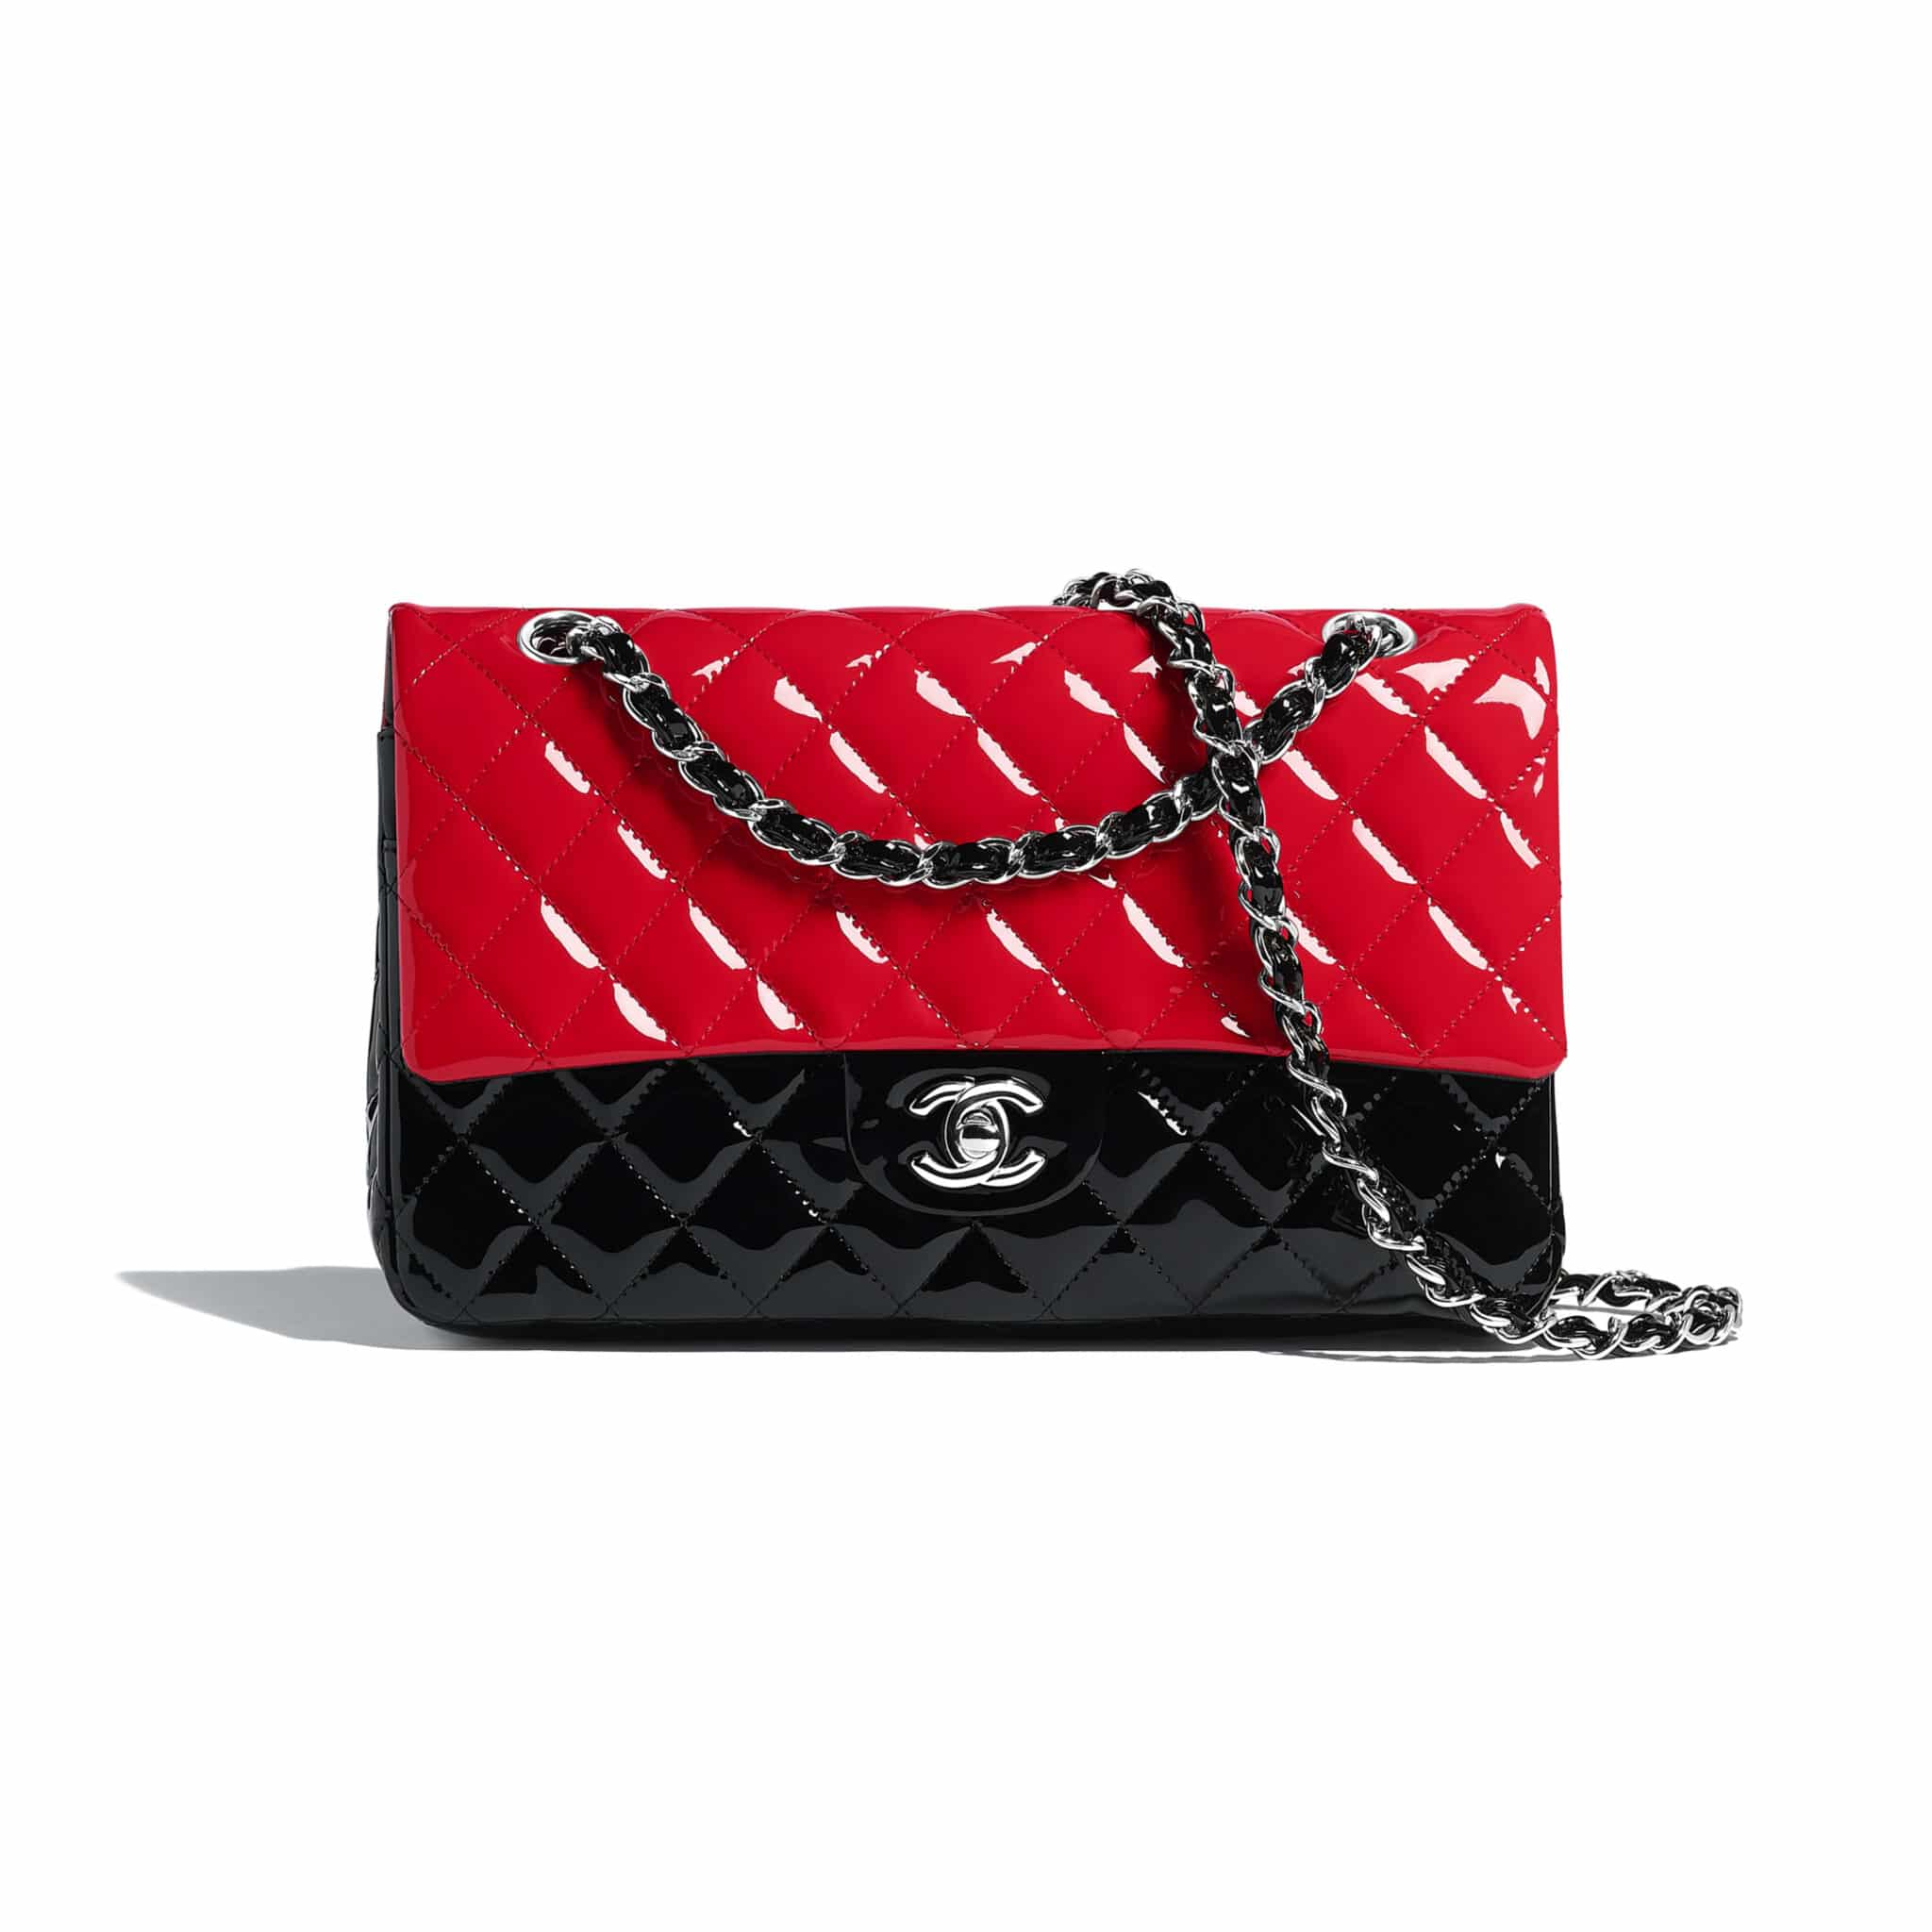 Chanel Bag Price 2020 Uk | Supreme and Everybody